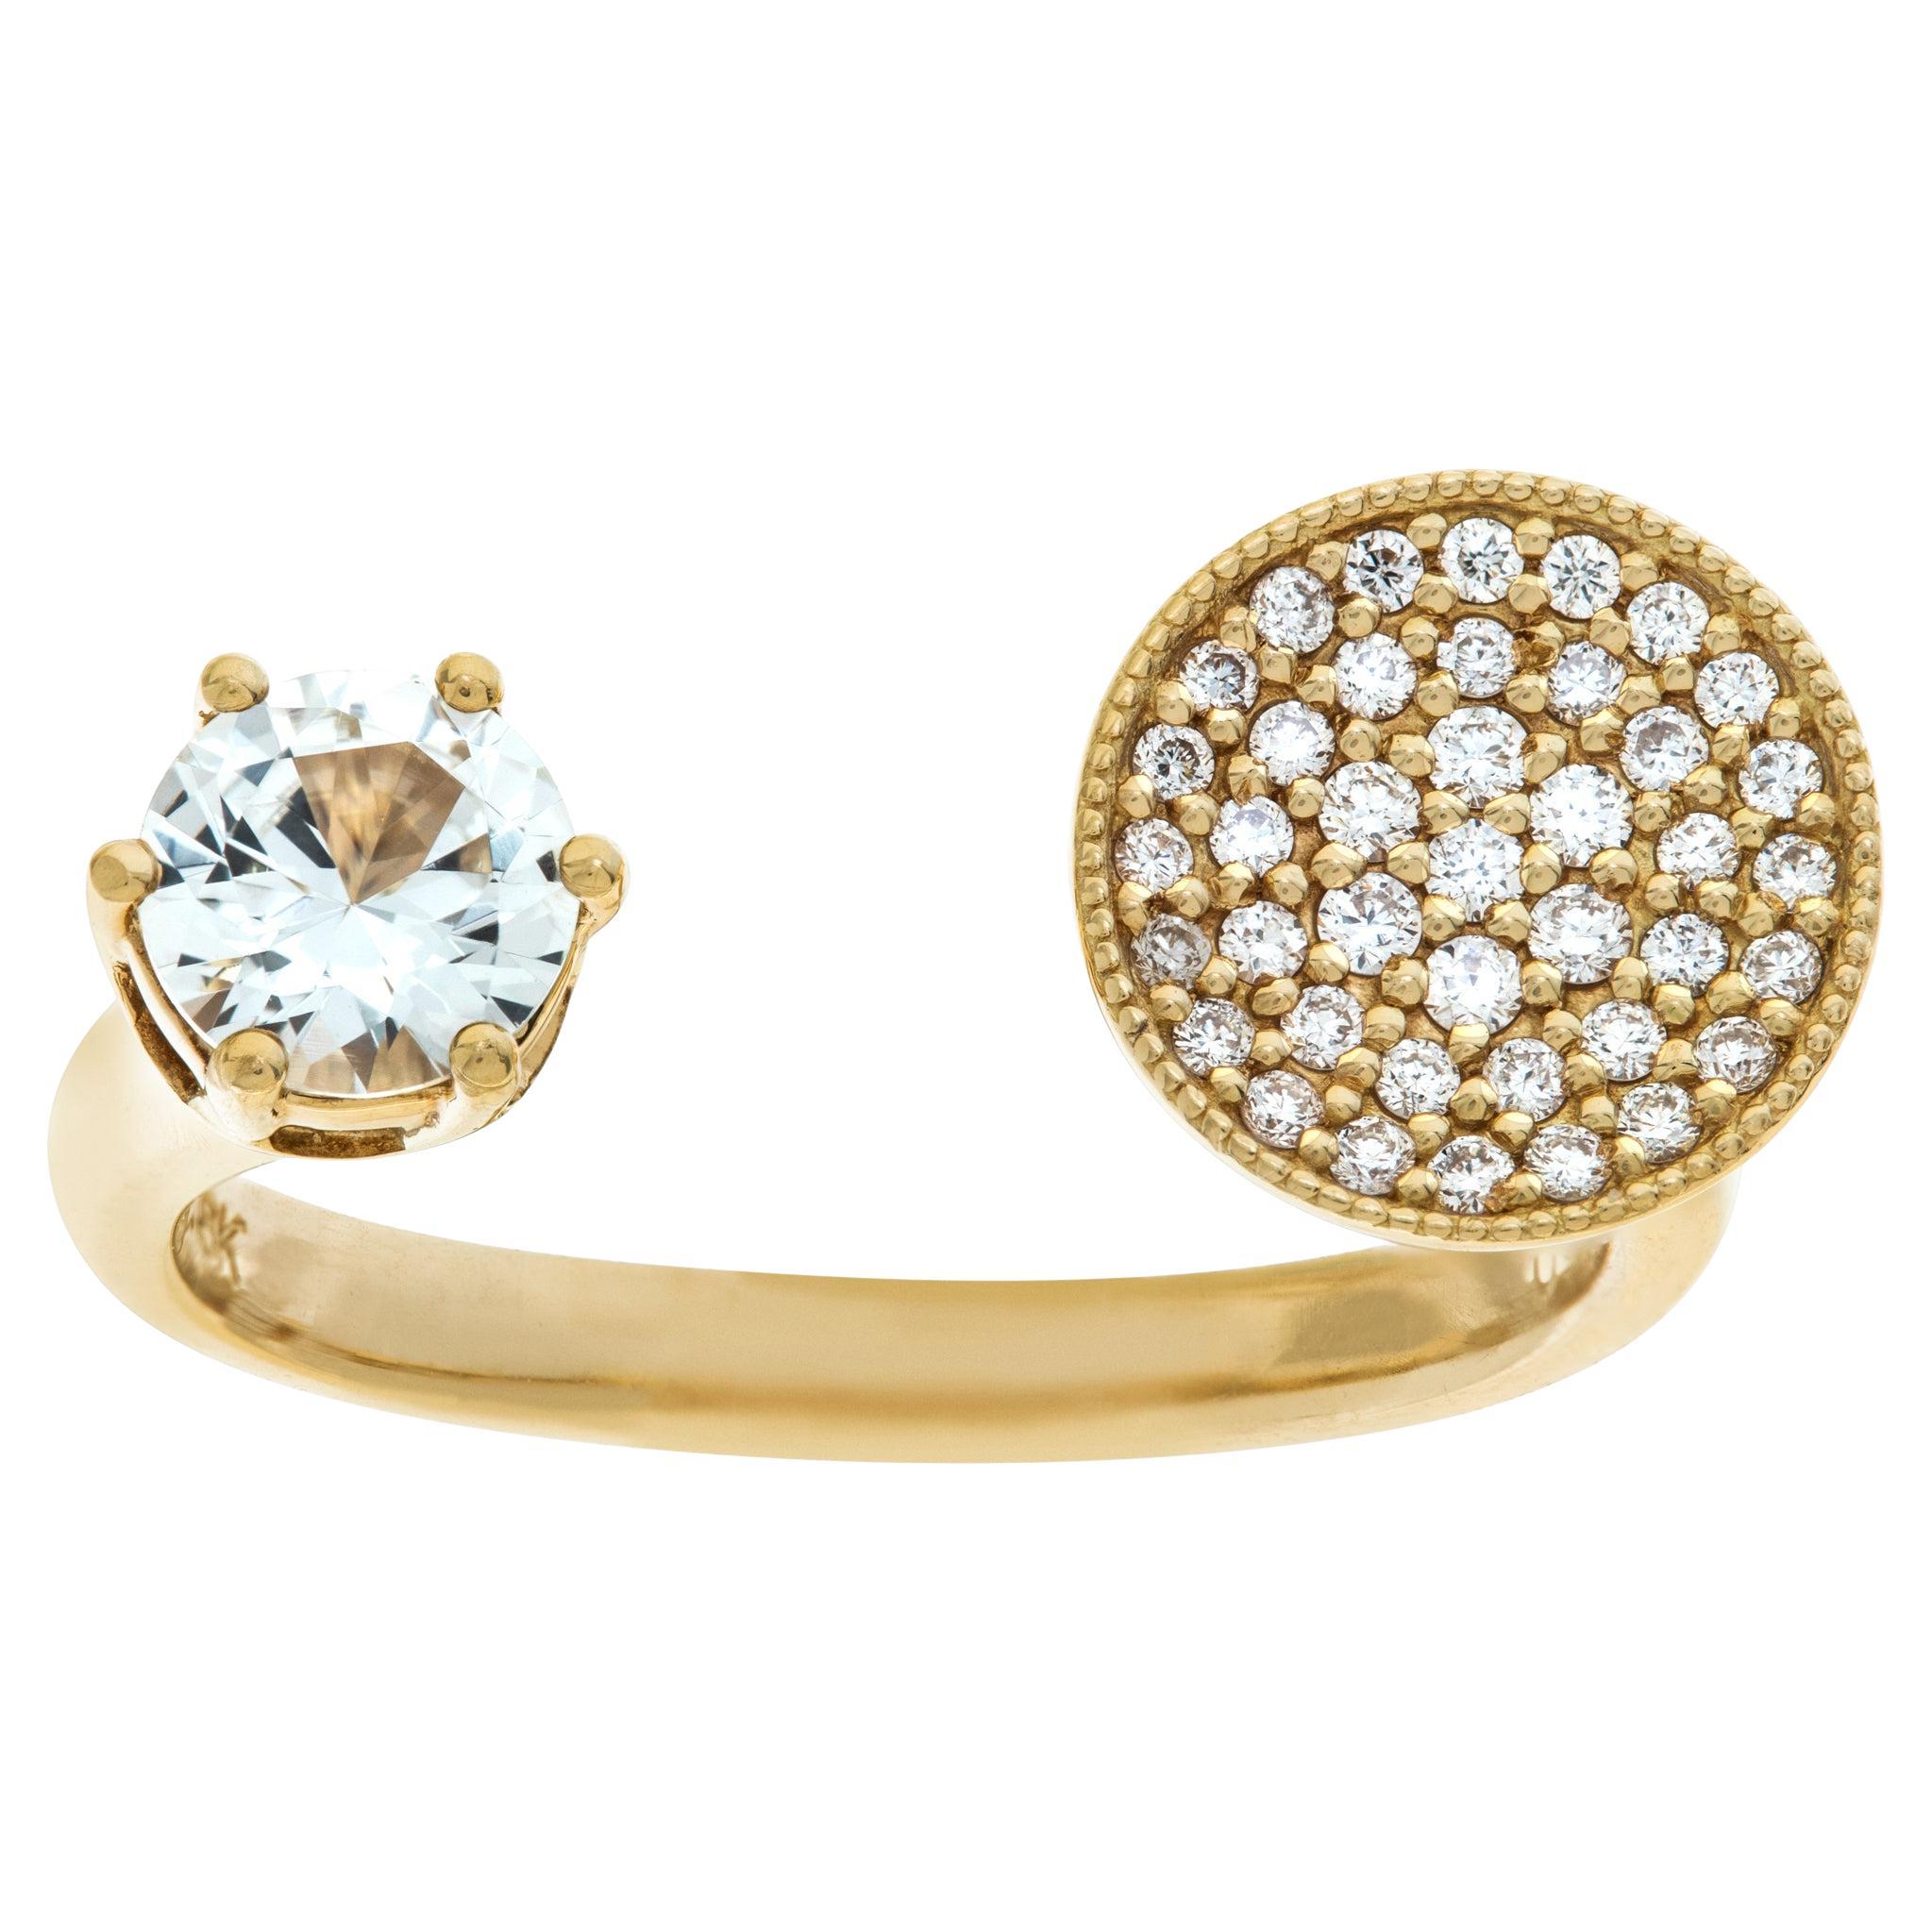 Offener Ring aus 18 Karat Gold mit weißen Saphiren und Diamanten